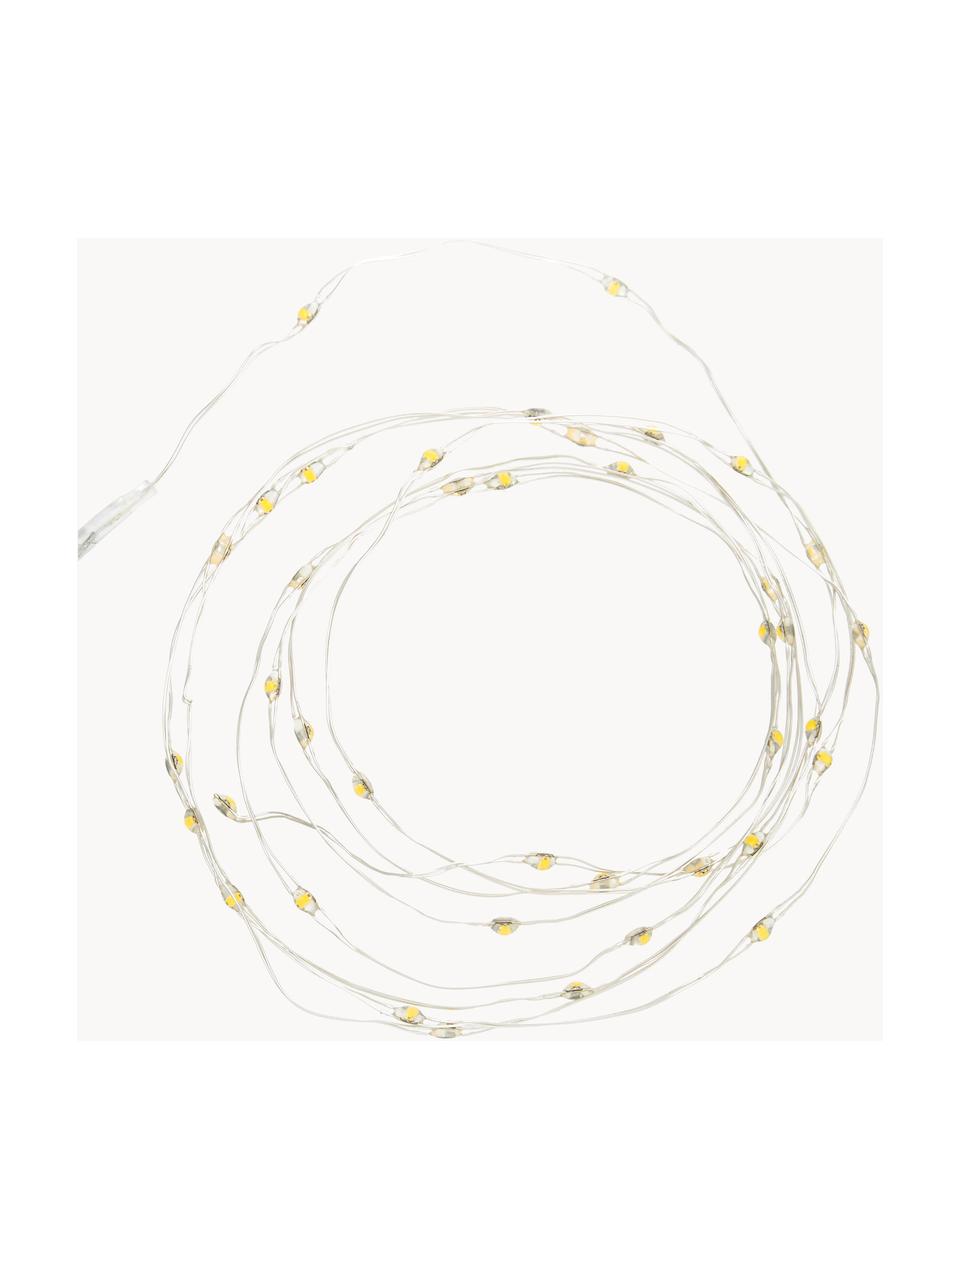 Světelný LED řetěz Wiry, 195 cm, Umělá hmota, kov, Transparentní, D 195 cm